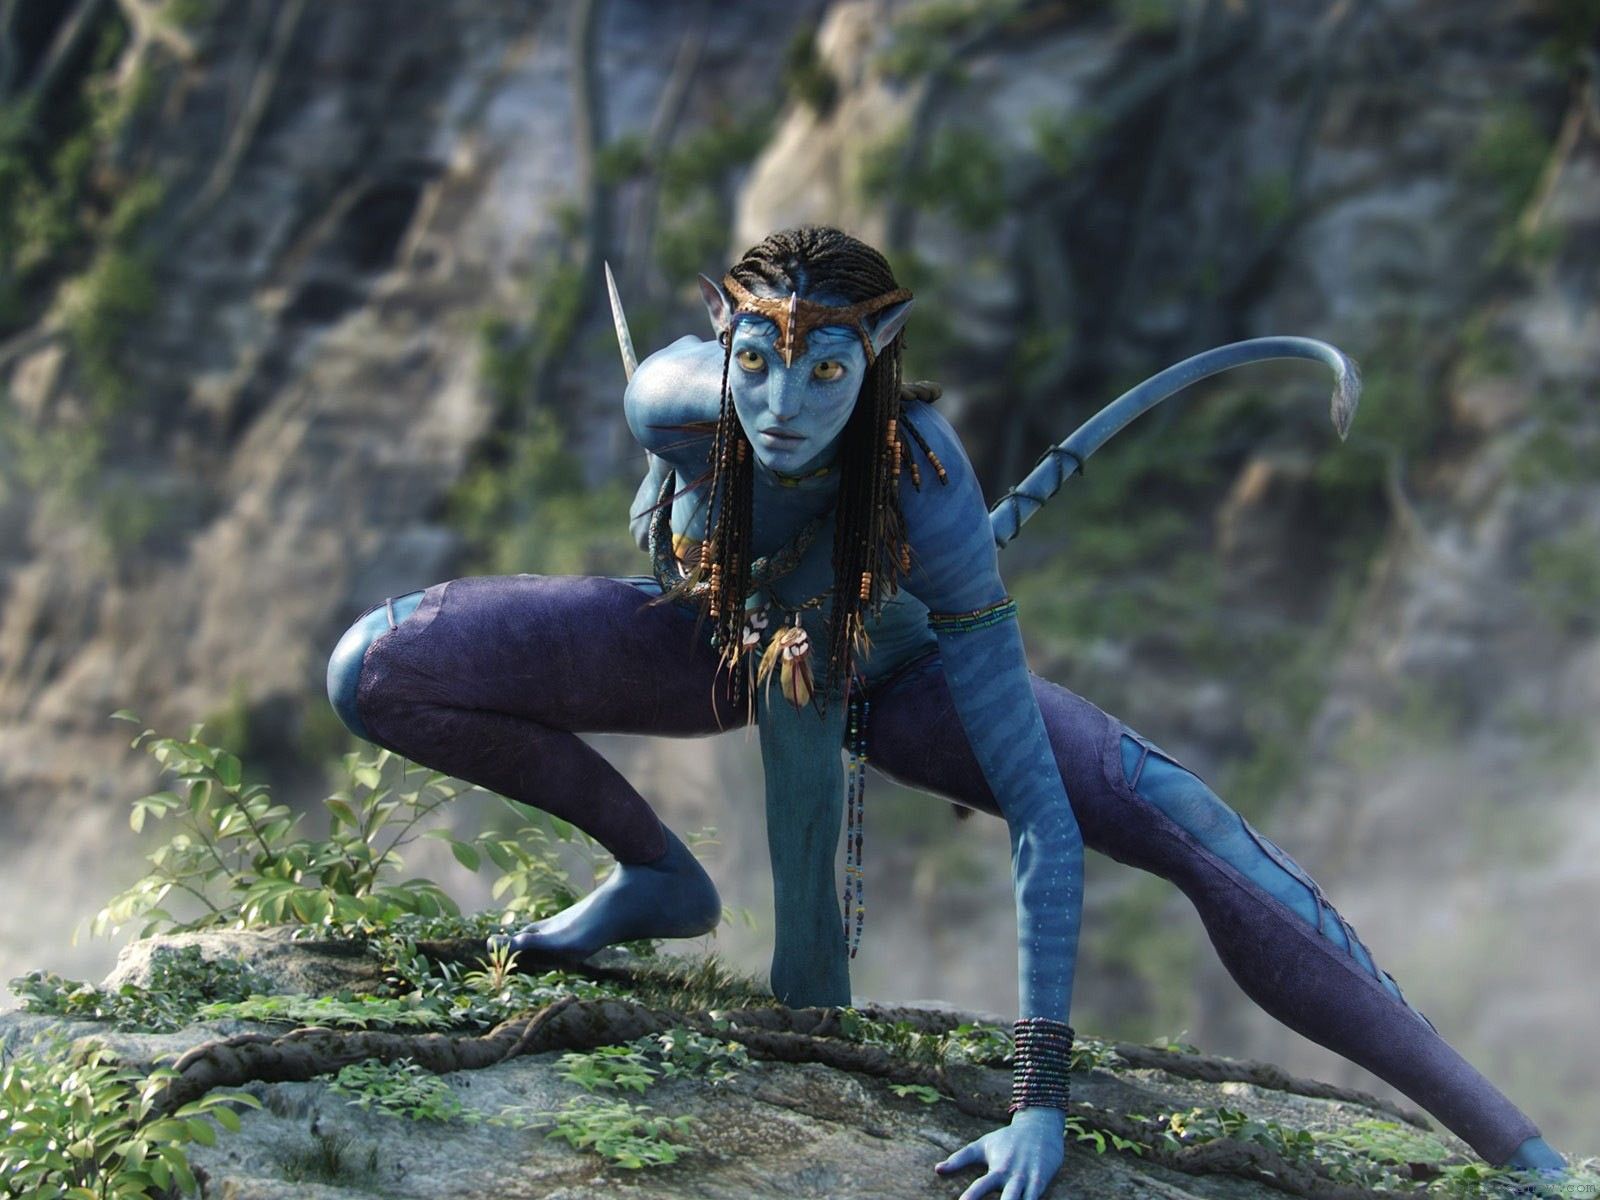 Filmul SF Avatar, relansat în China. Cu ce a dat lovitura  (VIDEO)